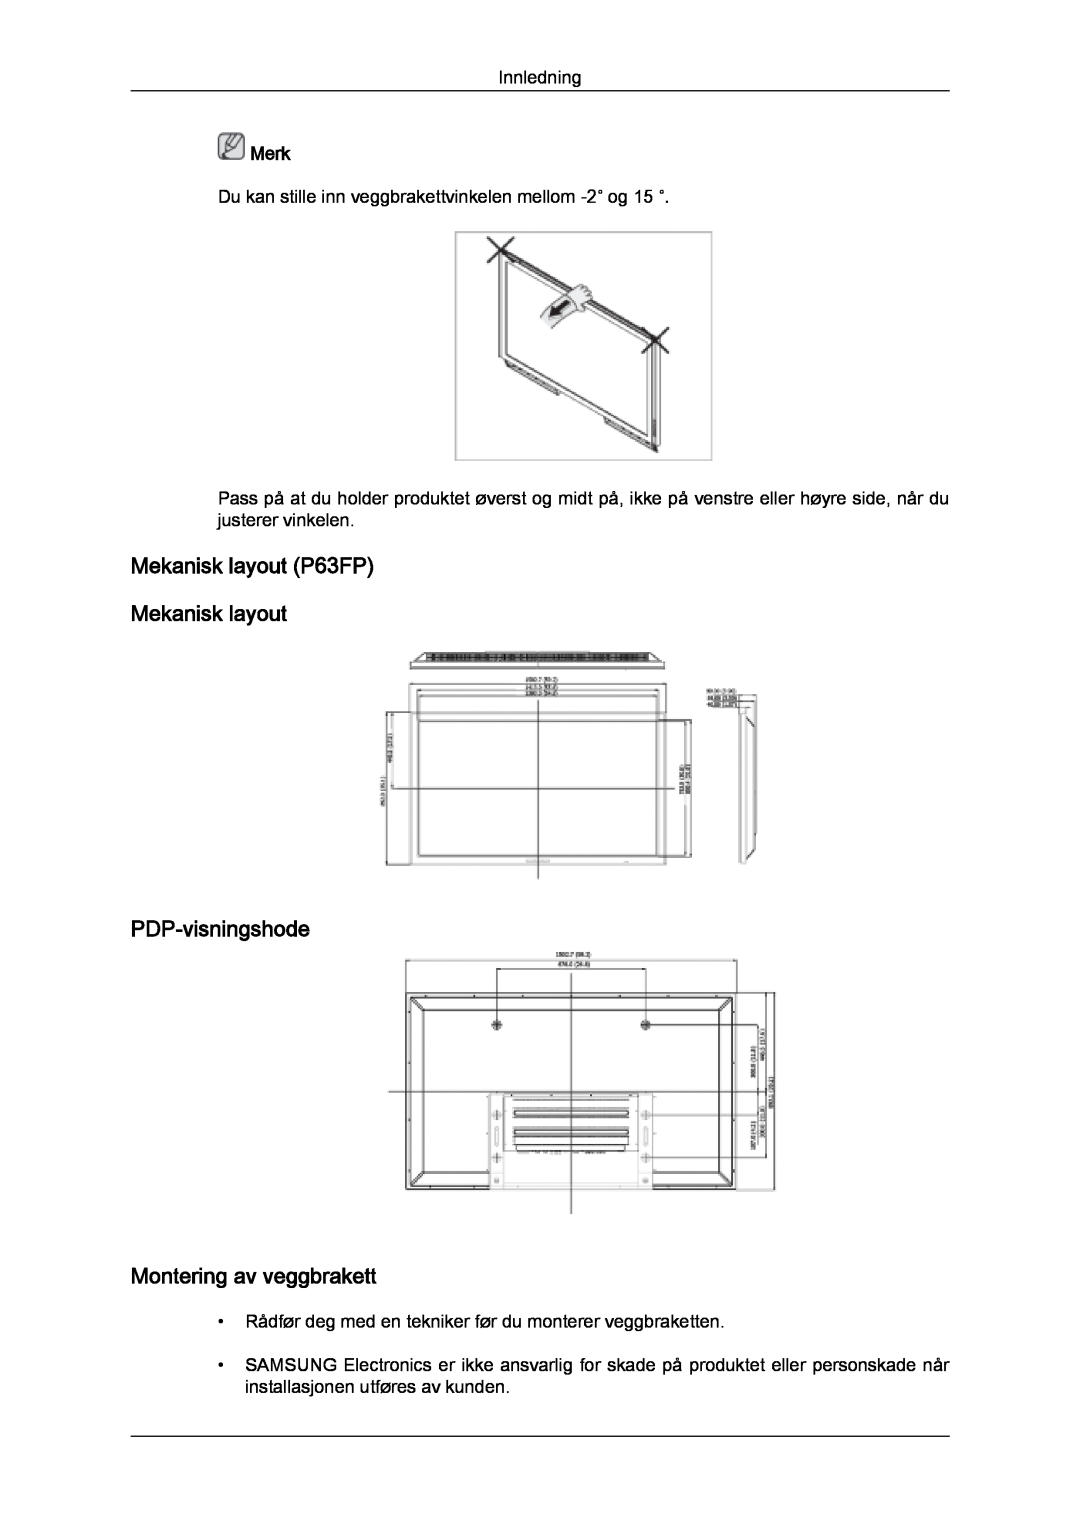 Samsung PH50KPFLBF/EN manual Mekanisk layout P63FP Mekanisk layout PDP-visningshode, Montering av veggbrakett, Merk 